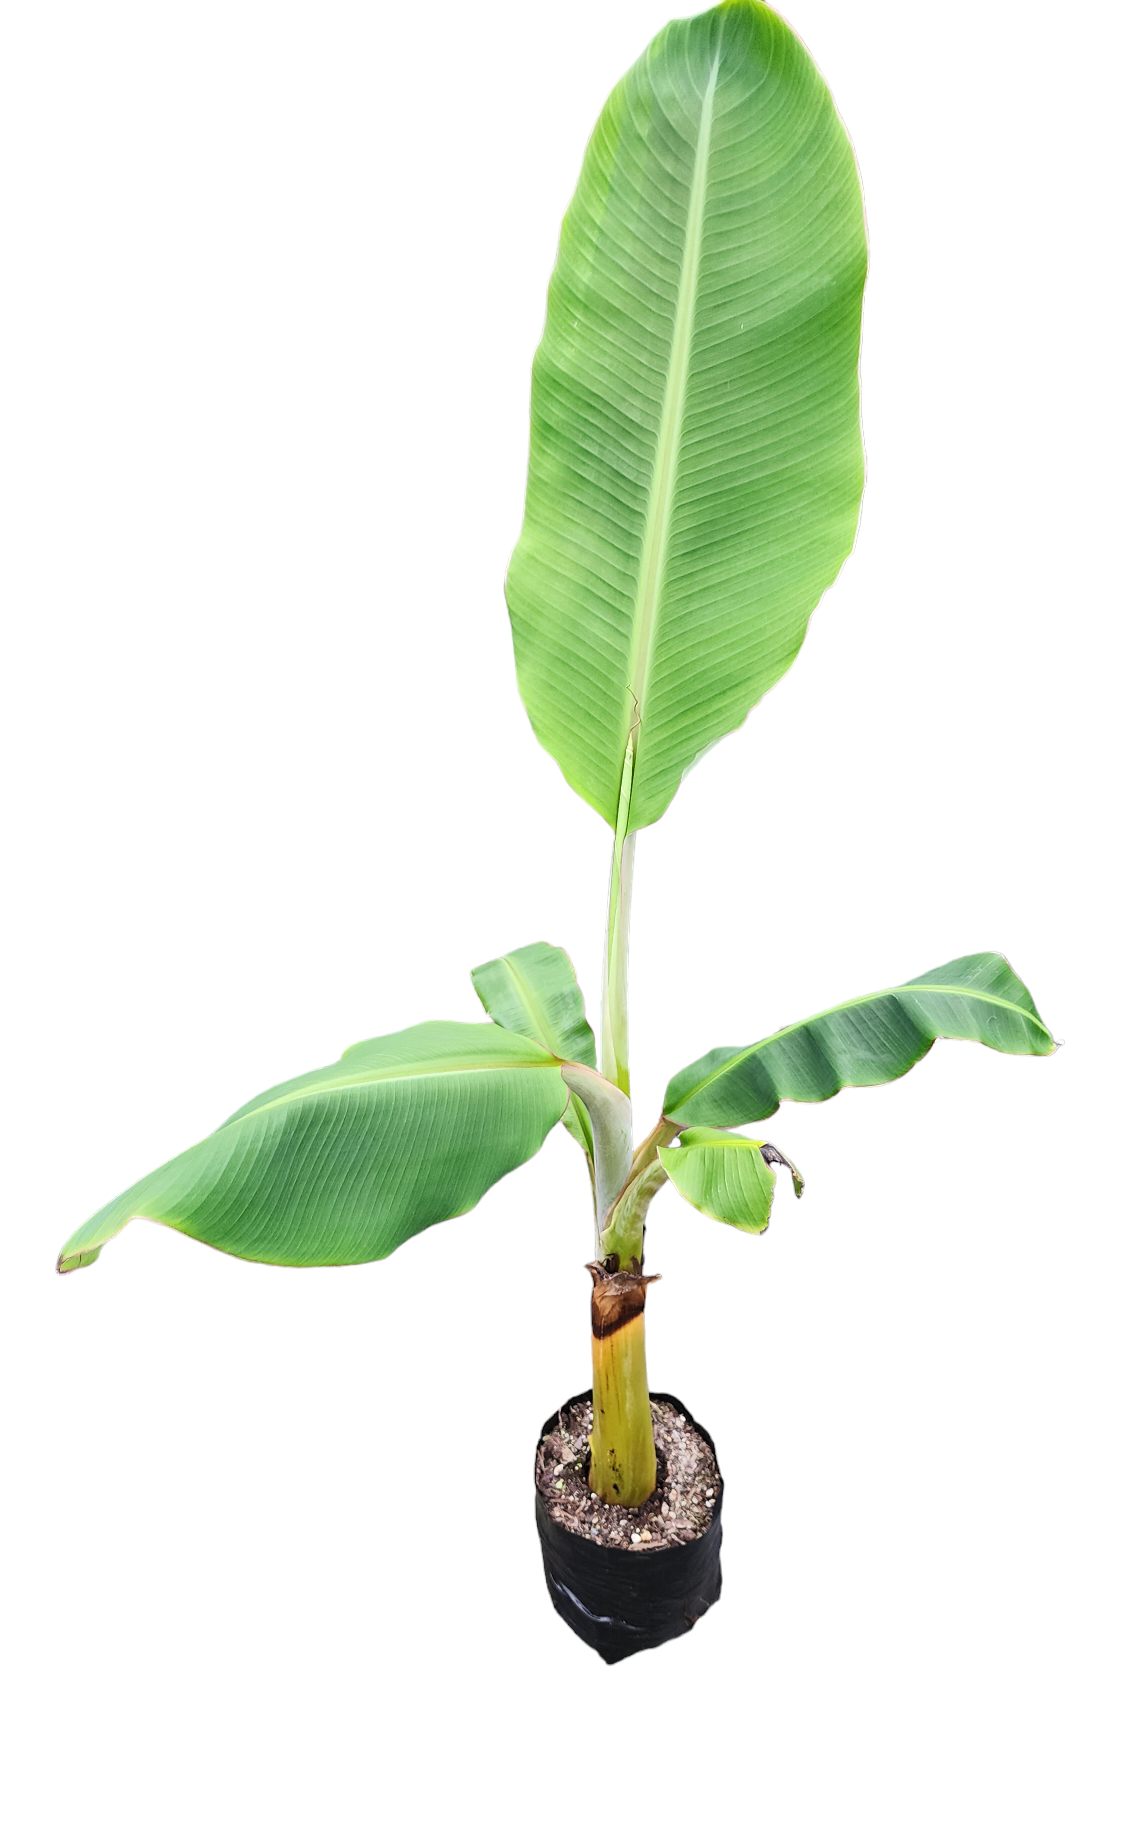 Banana -  Pacific Plantain